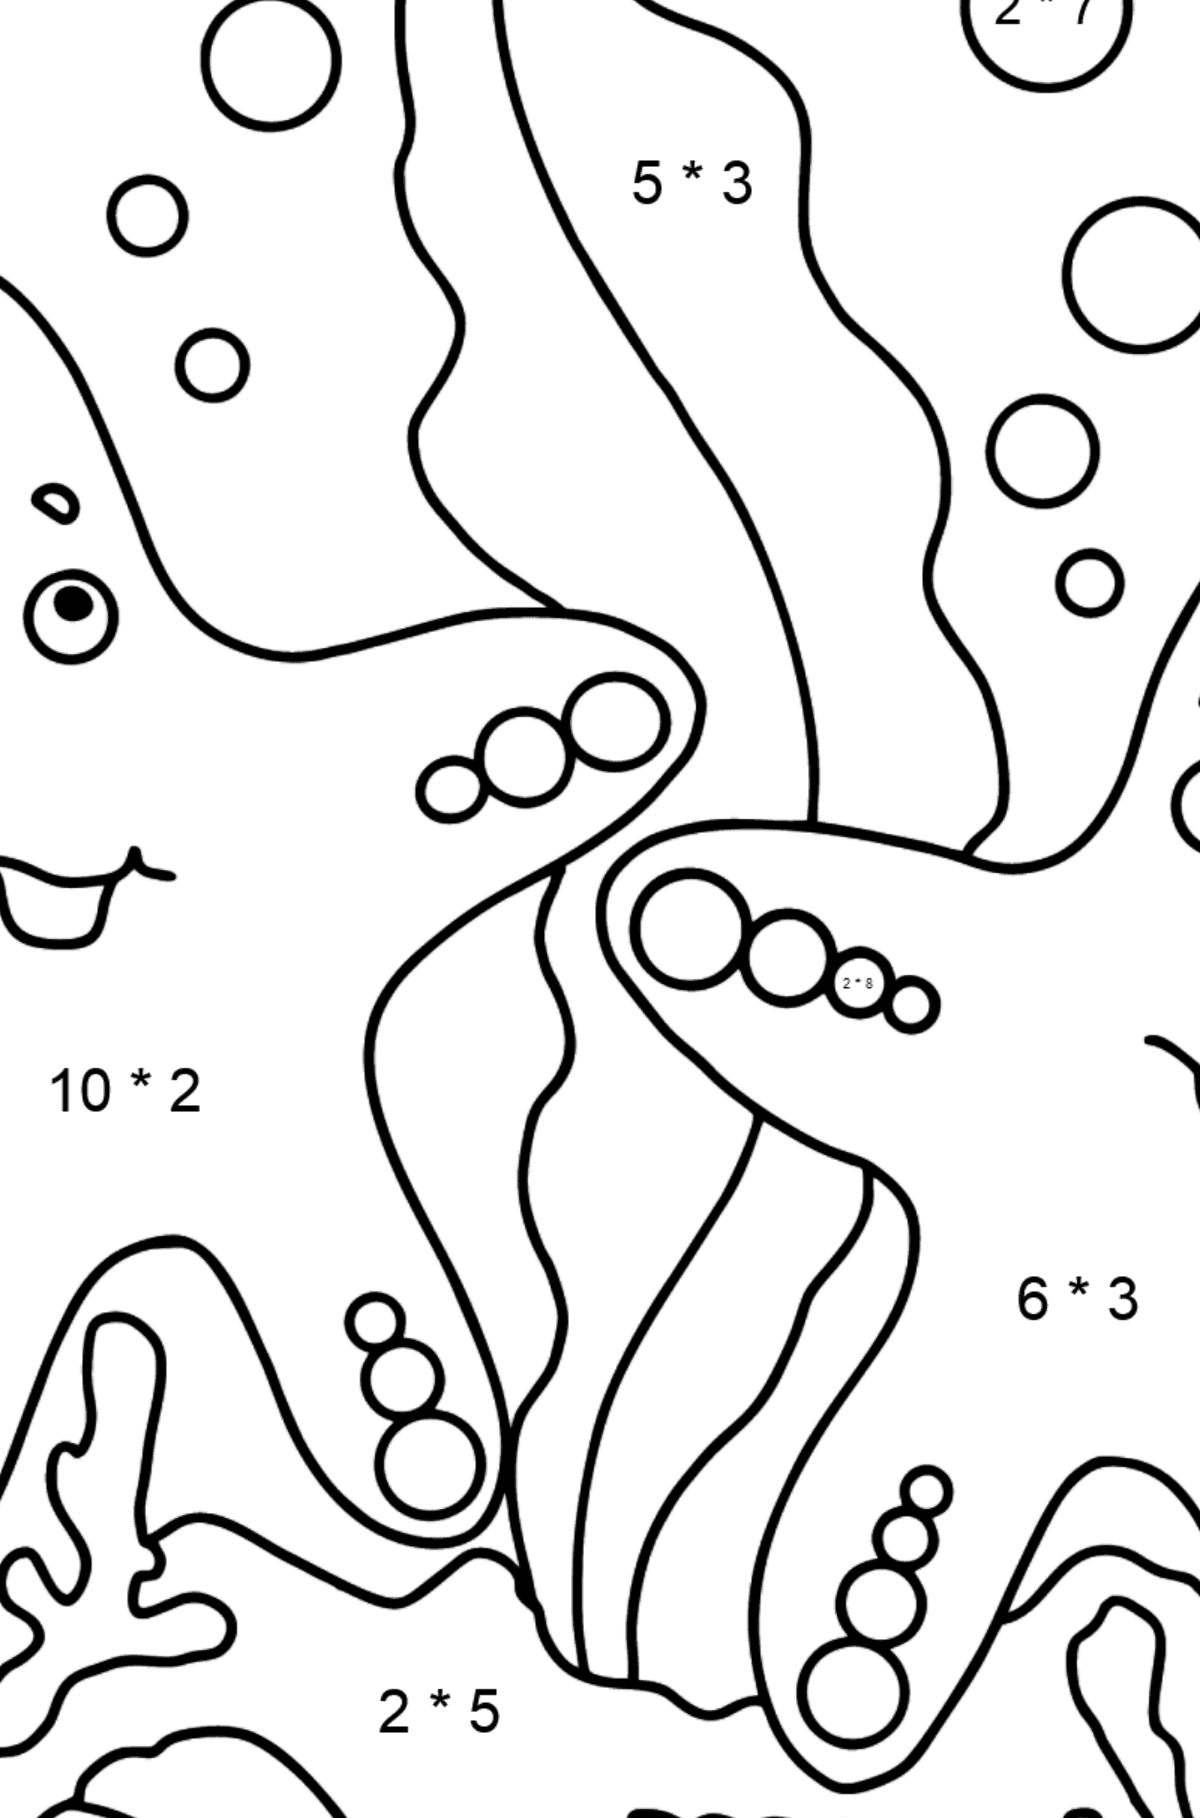 Dibujo para colorear Dos estrellas de mar (fácil) - Colorear con Matemáticas - Multiplicaciones para Niños